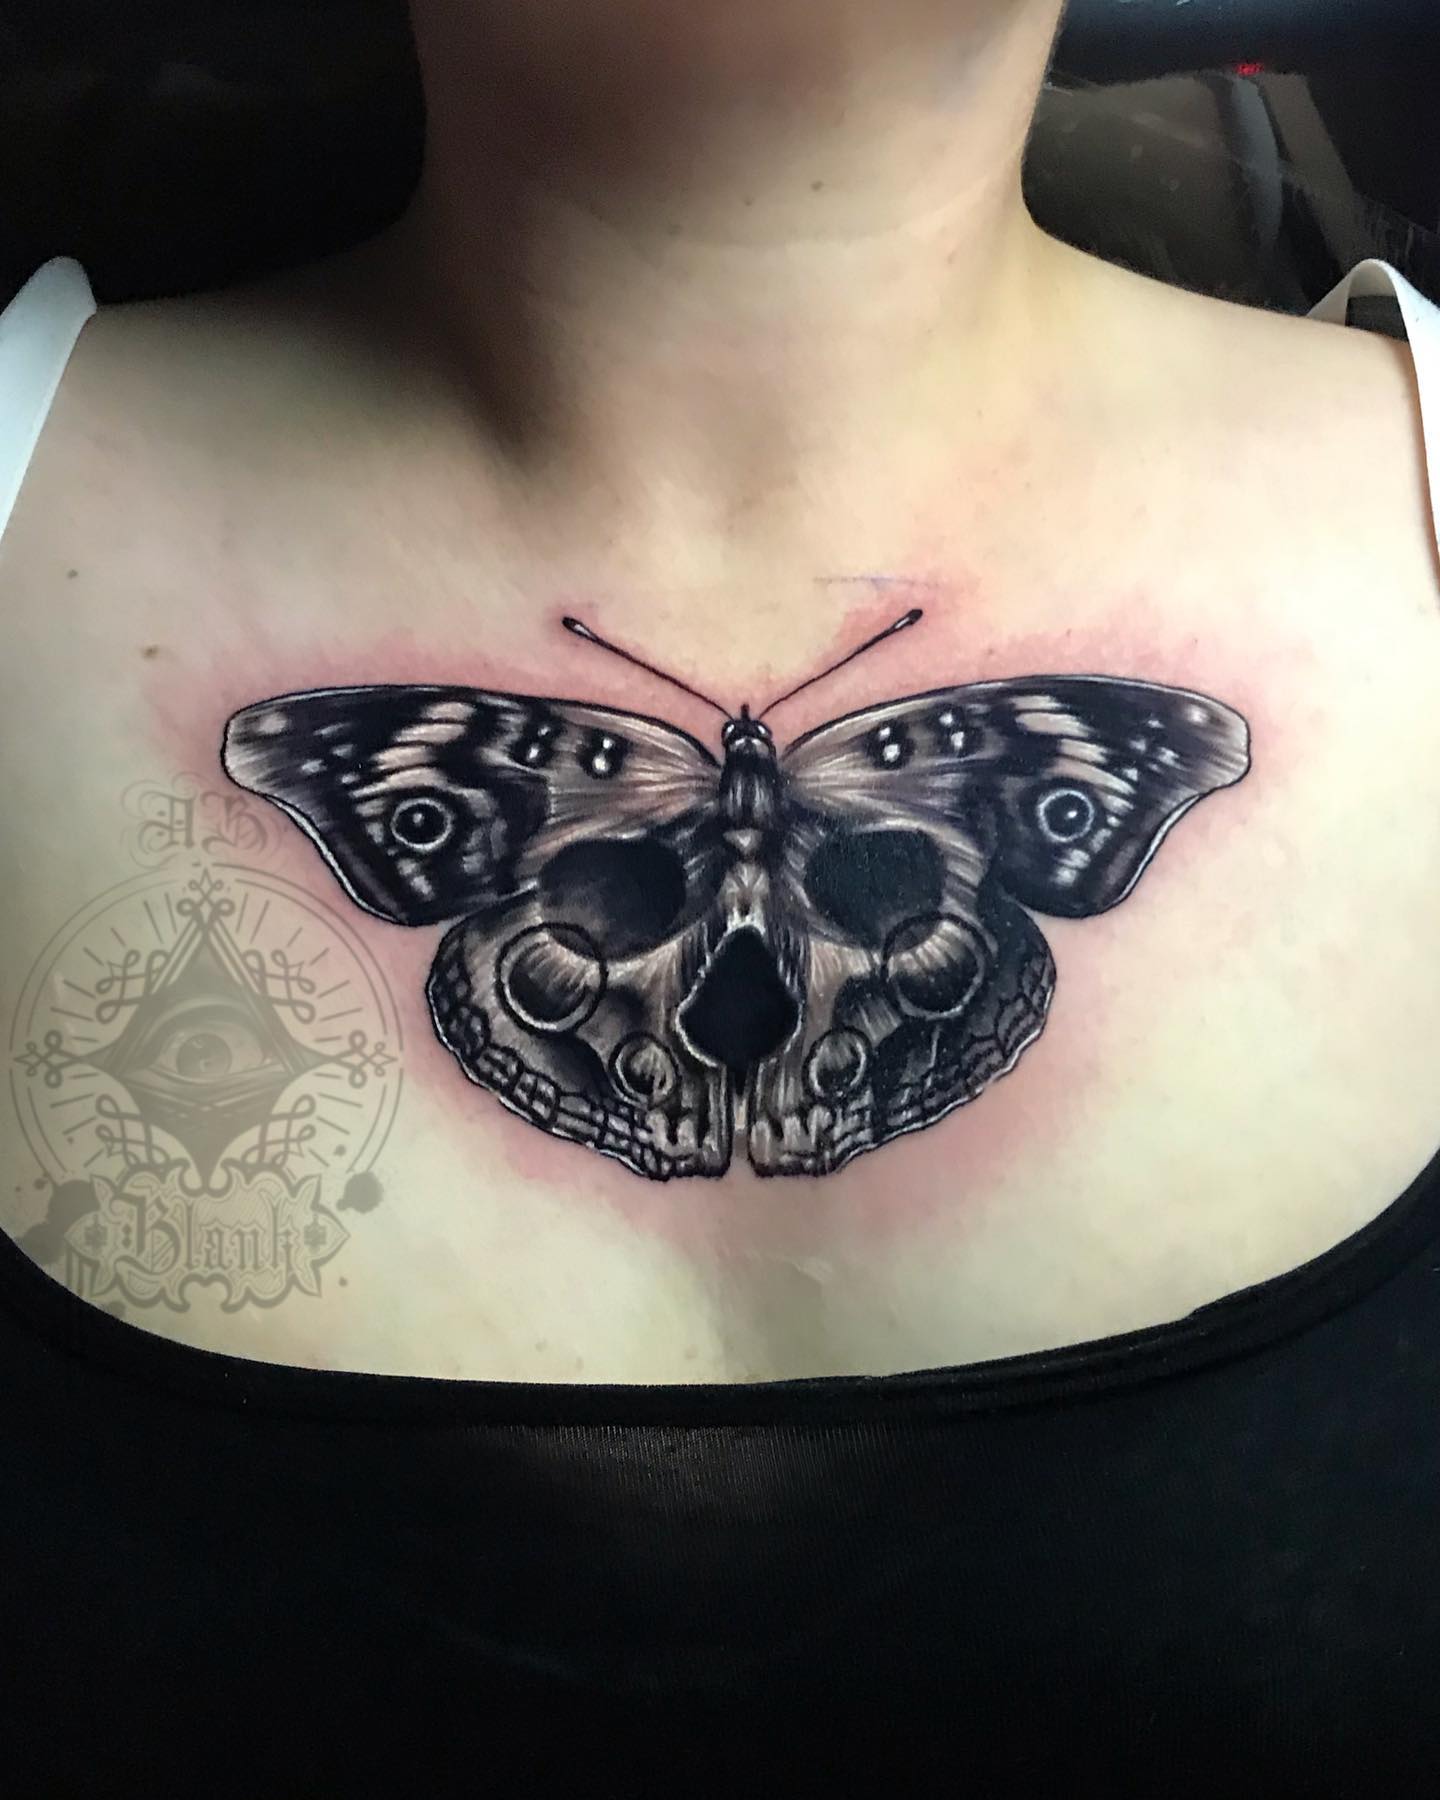 Butterflies by CAR TattooNOW